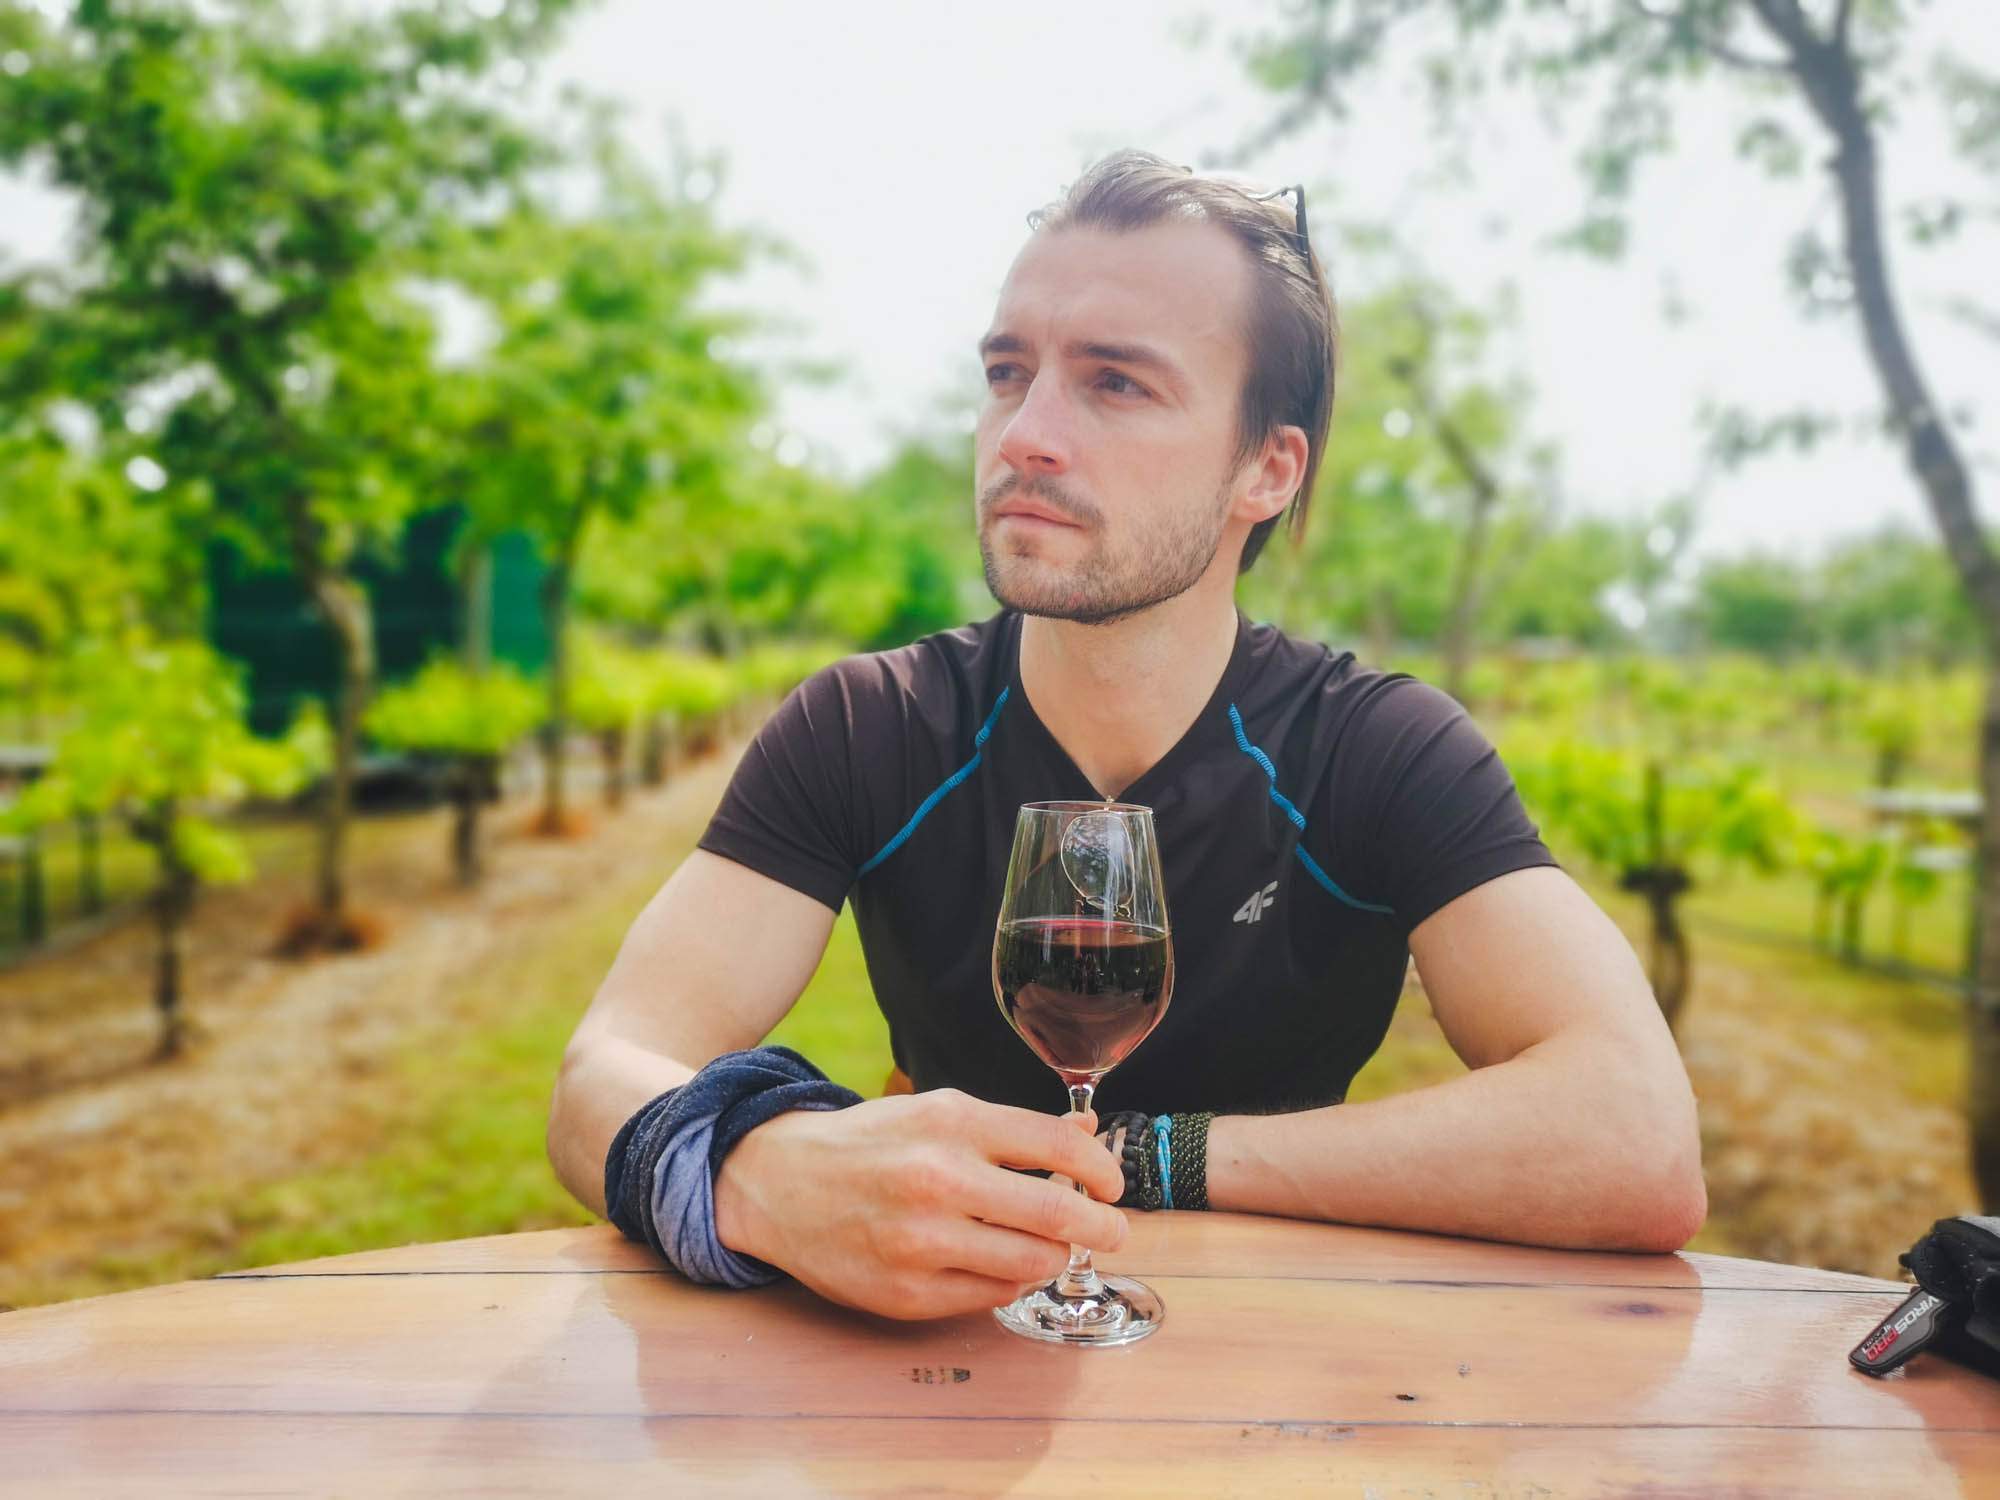 Drinking red wine in vineyards of Burgenland, Austria